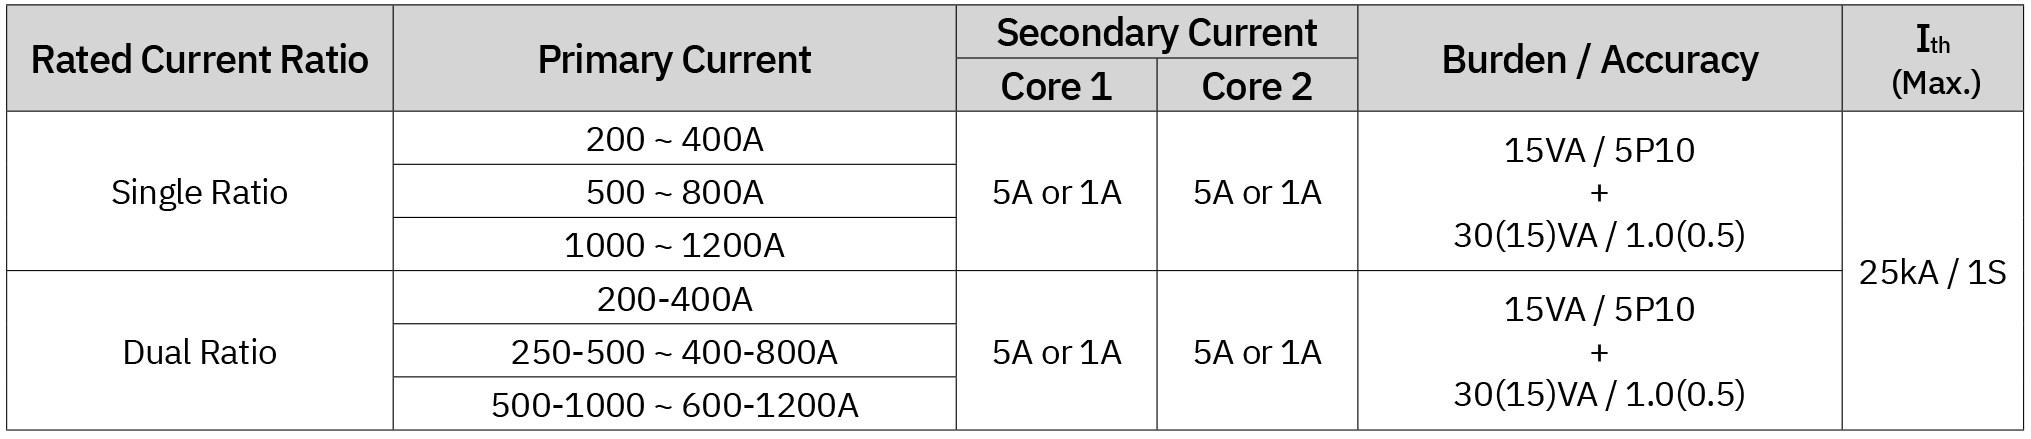 جدول المواصفات لمحول التيار الزجاجي الإيبوكسي ذو النواة المزدوجة 3.6 كيلو فولت (ER-3C)